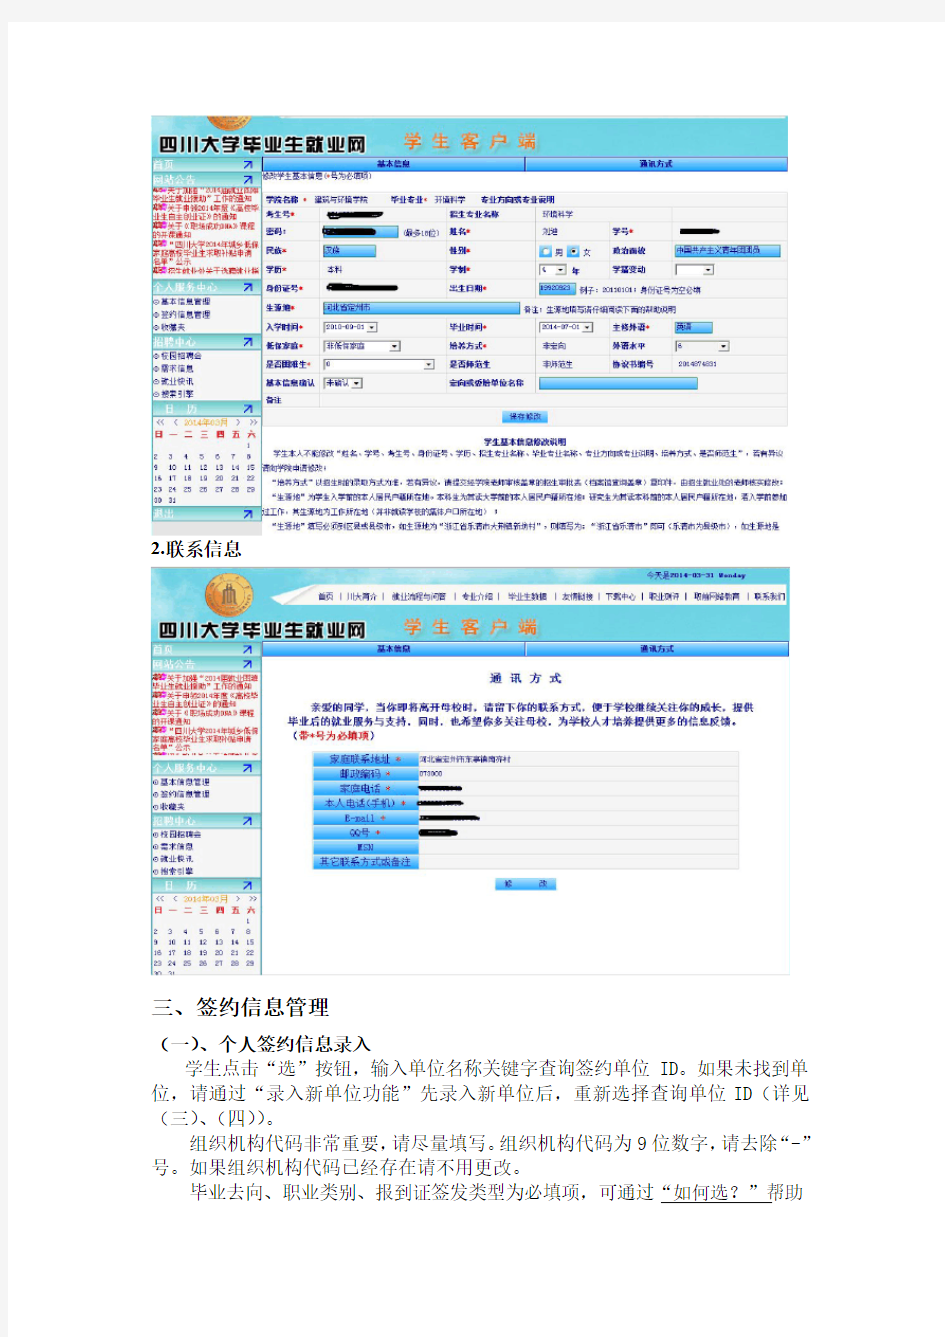 四川大学毕业生就业网学生客户端使用说明(2014.4.23版)